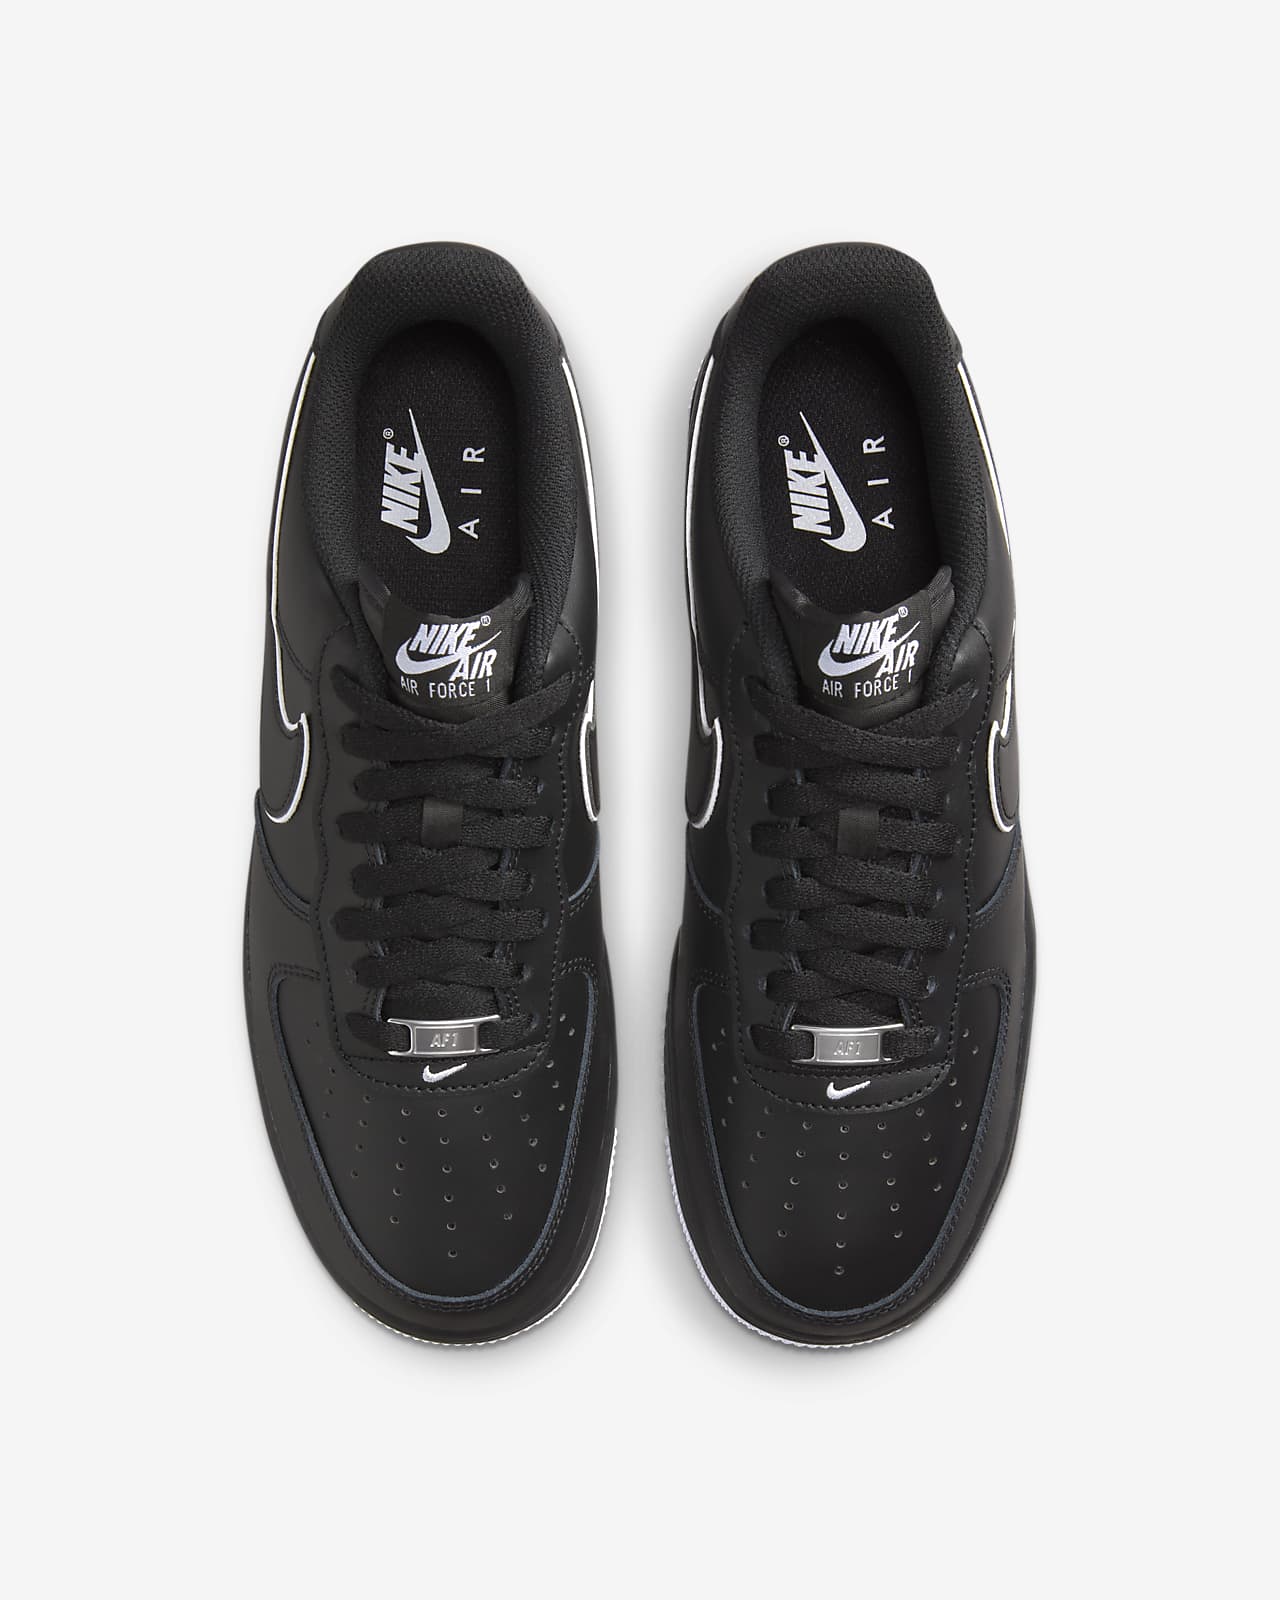 Nike Chaussures Air Force 1 '07 - Blanc/Noir